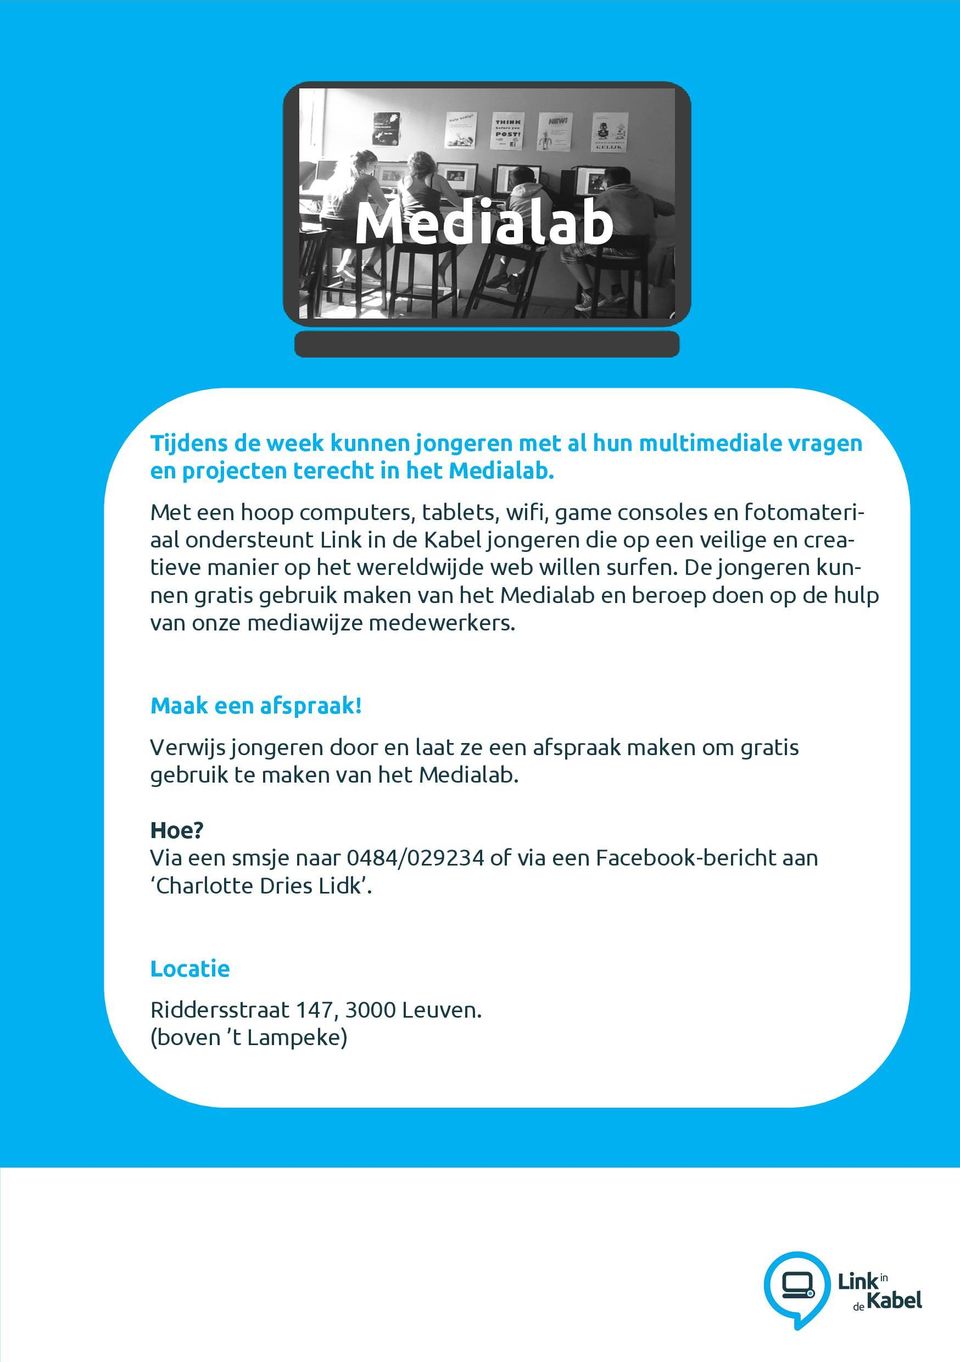 web willen surfen. De jongeren kunnen gratis gebruik maken van het Medialab en beroep doen op de hulp van onze mediawijze medewerkers. Maak een afspraak!